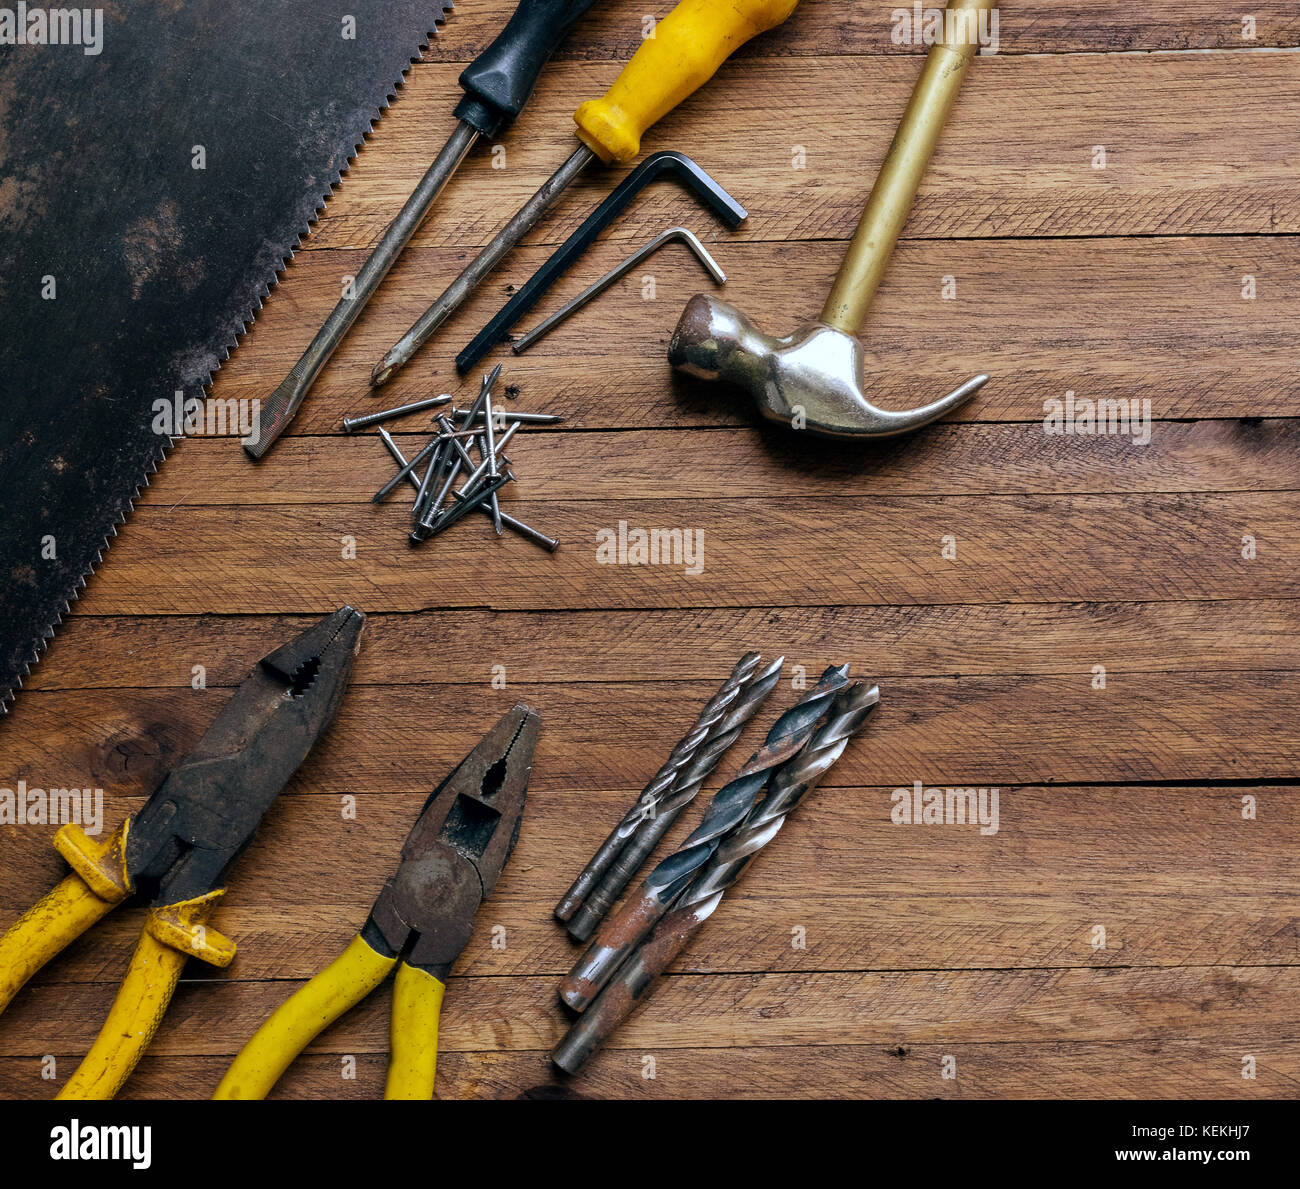 Rostig und Alt verwendet Zimmerei und Garage Tools auf einem hellen braun Holz Hintergrund, zeigt vielfältige Werkzeuge, Zangen und sah mit Metall, Metall Bohrer, Hammer Stockfoto